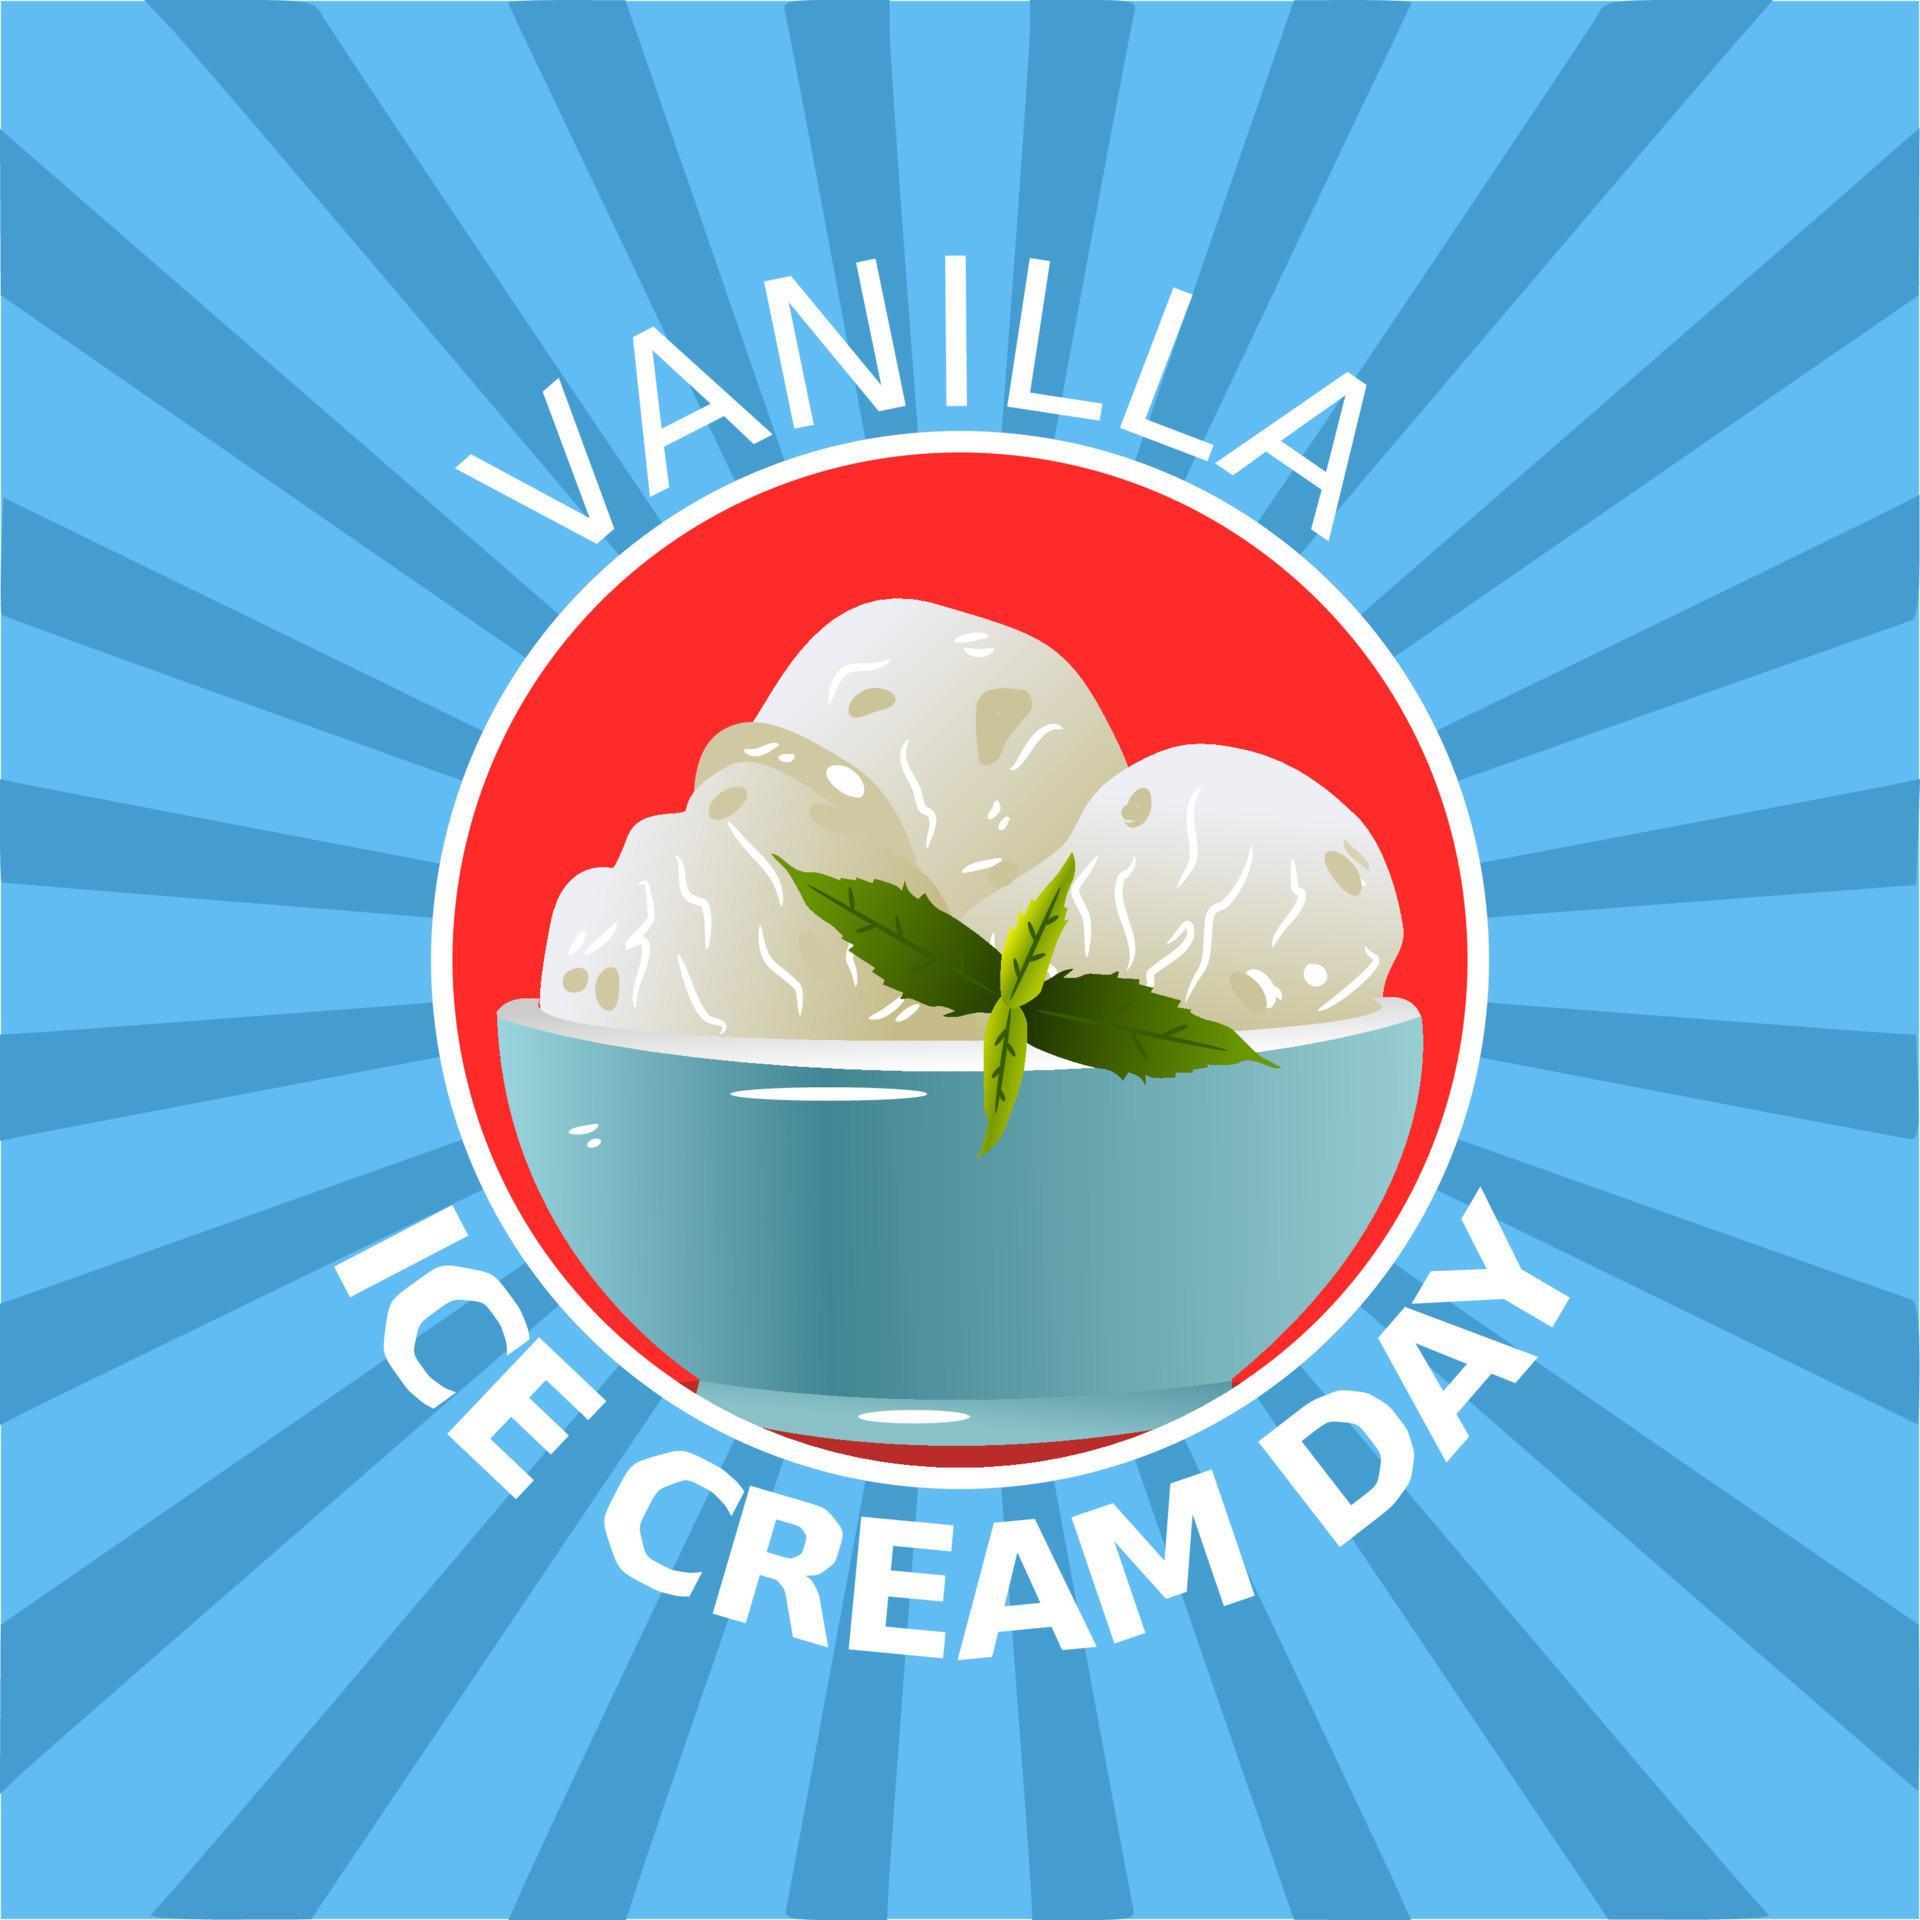 Vanilla Ice Cream Day vector lllustration 5347935 Vector Art at Vecteezy